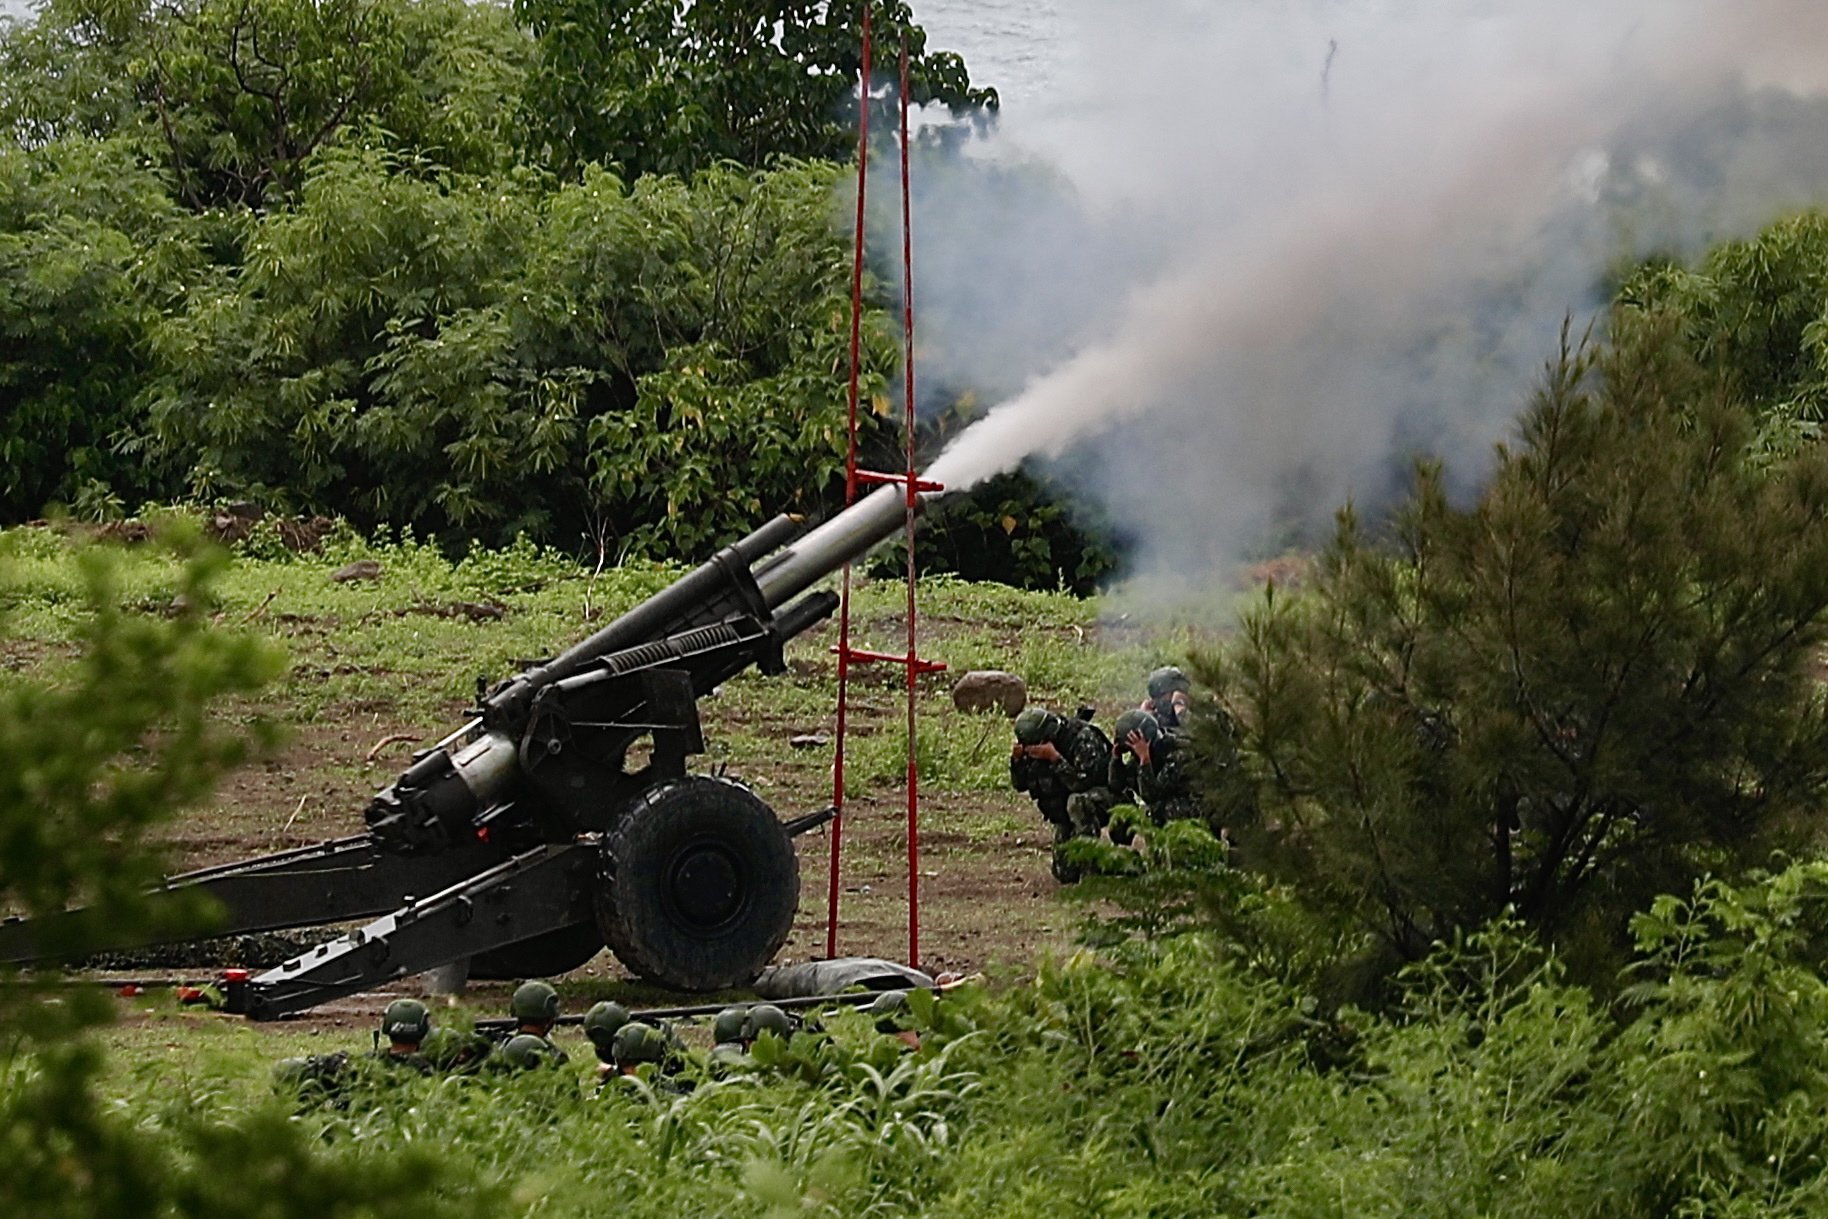 Taiwan respon a la Xina amb un simulacre de defensa amb foc real